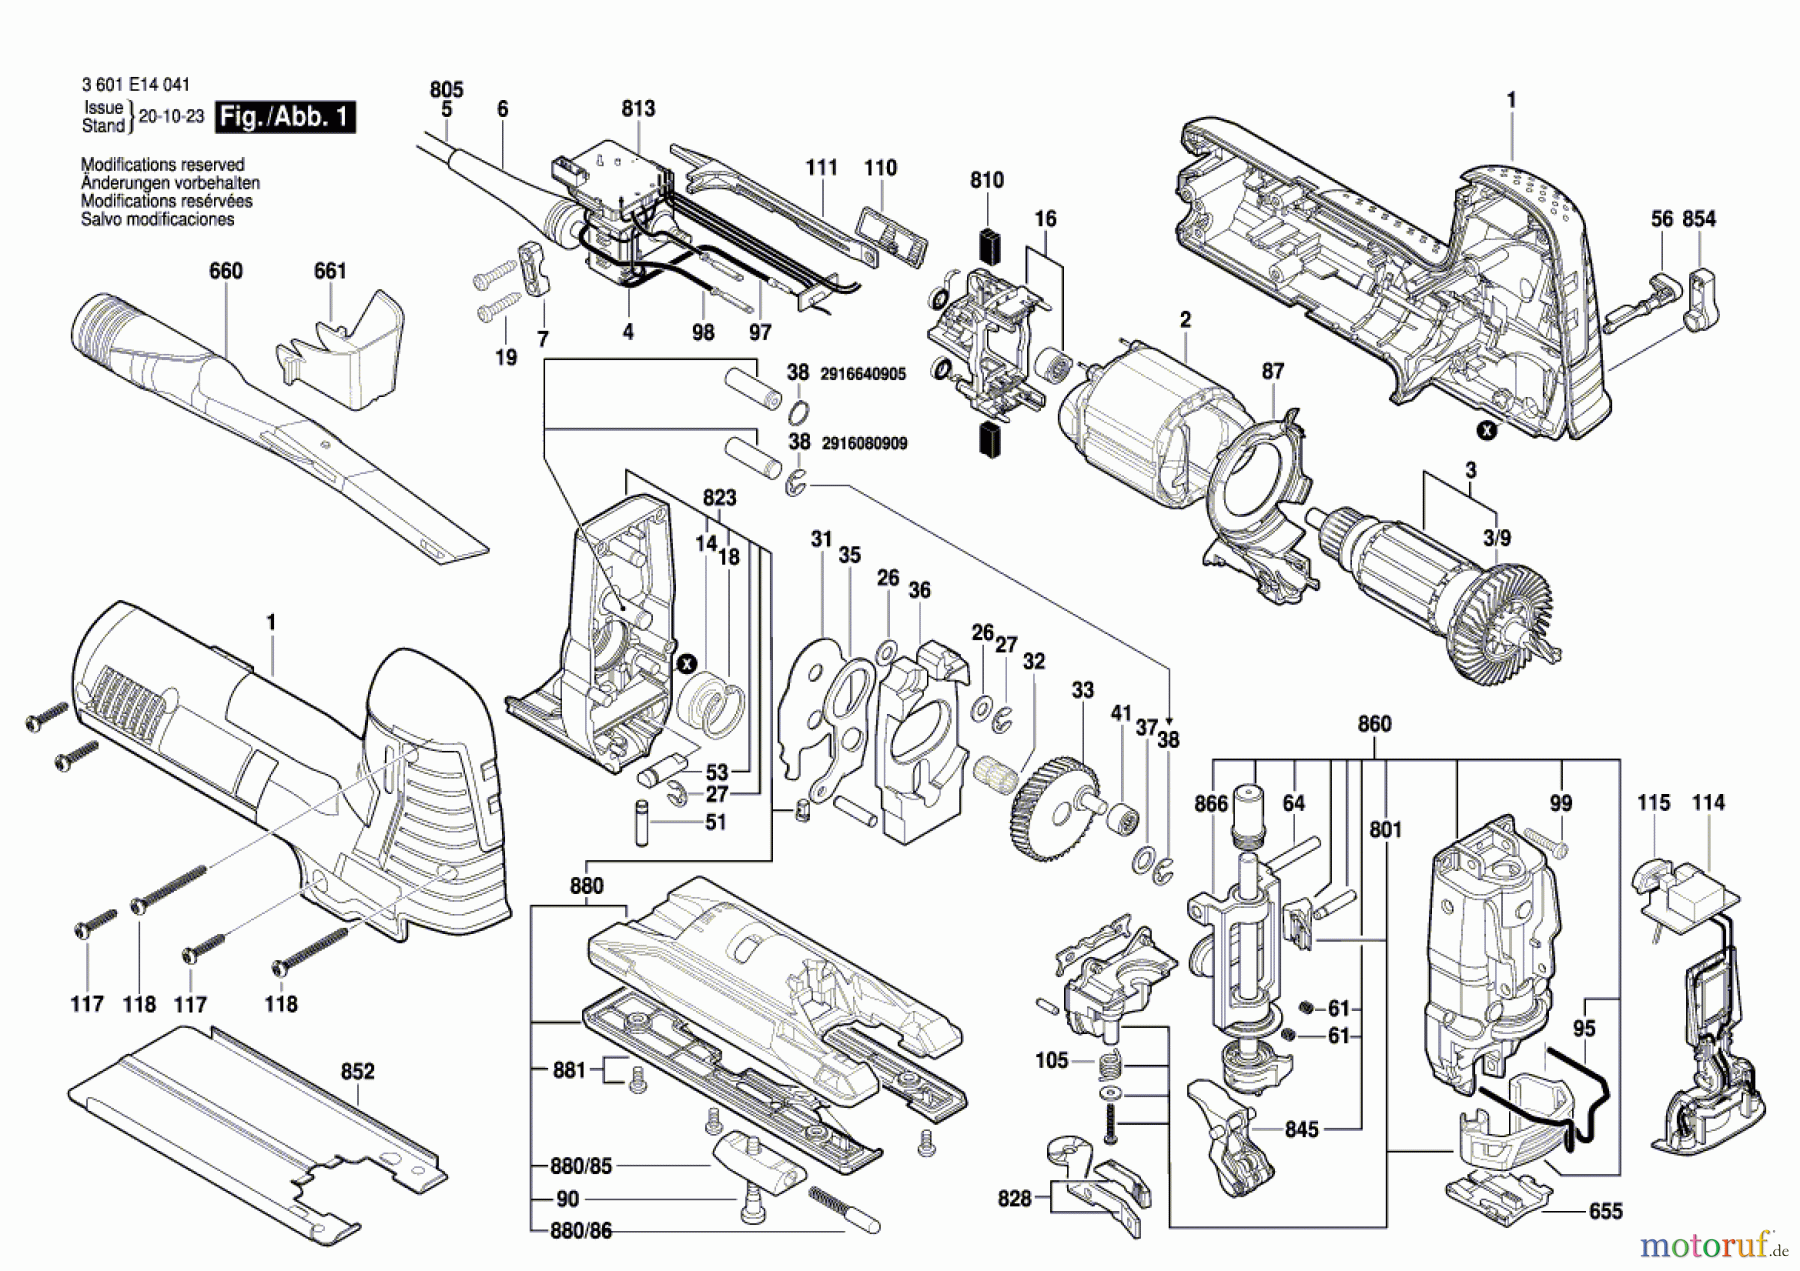  Bosch Werkzeug Pendelstichsäge GST 140 CE Seite 1